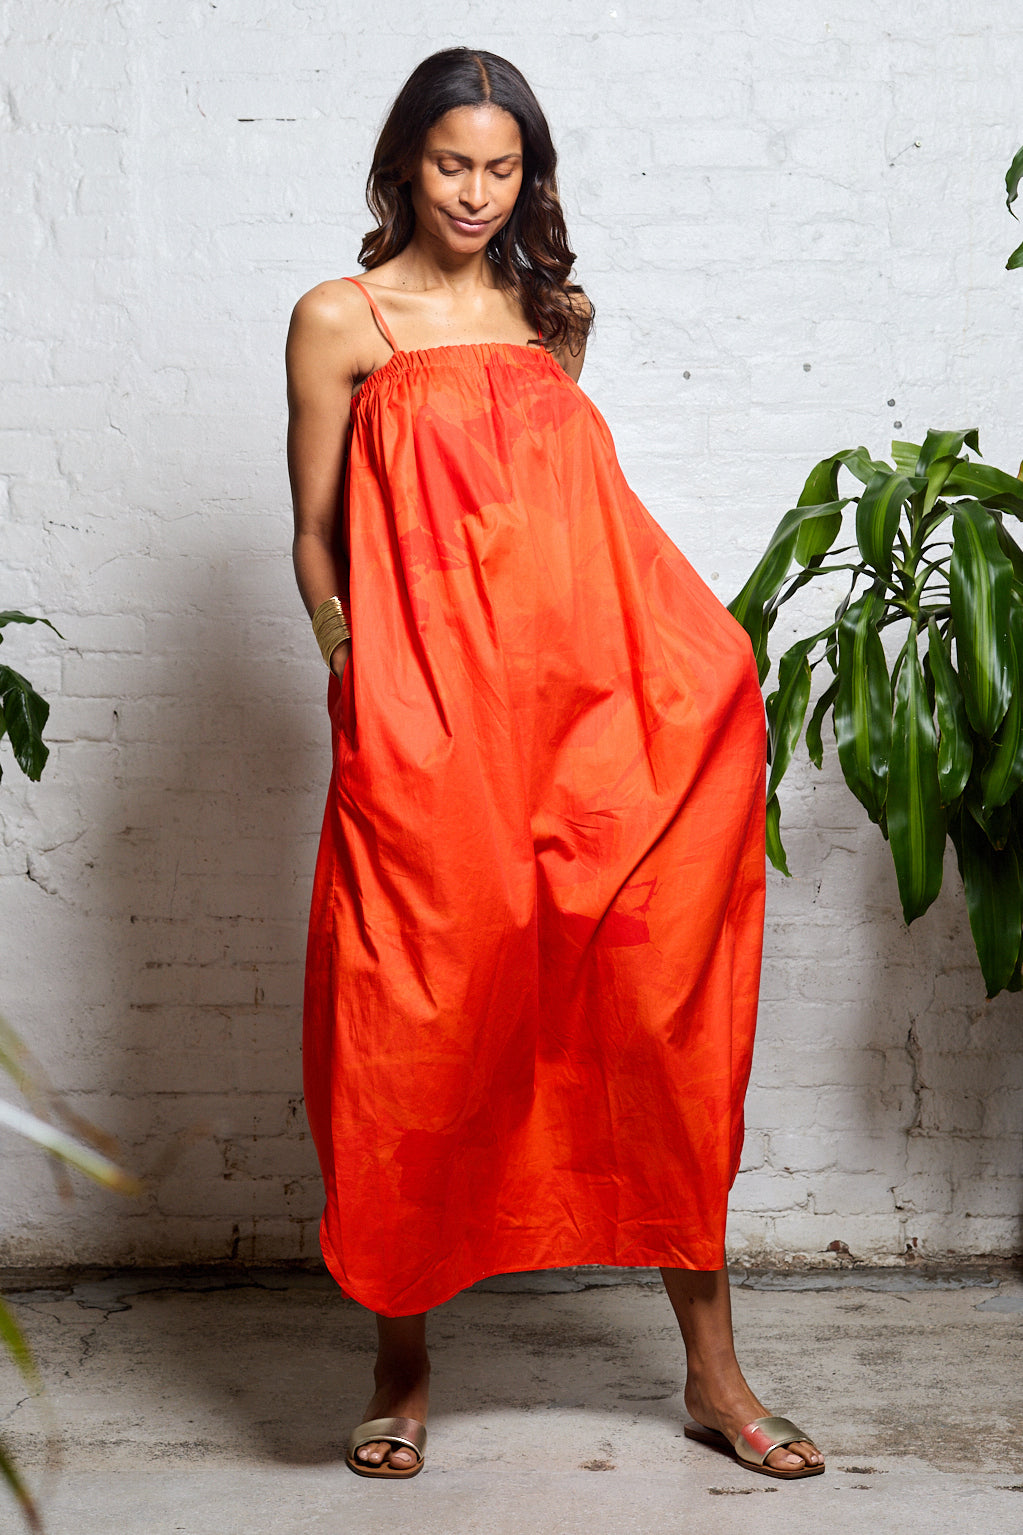 CAMI NYC Bibiana Dress in Orange. Size 6, 8.